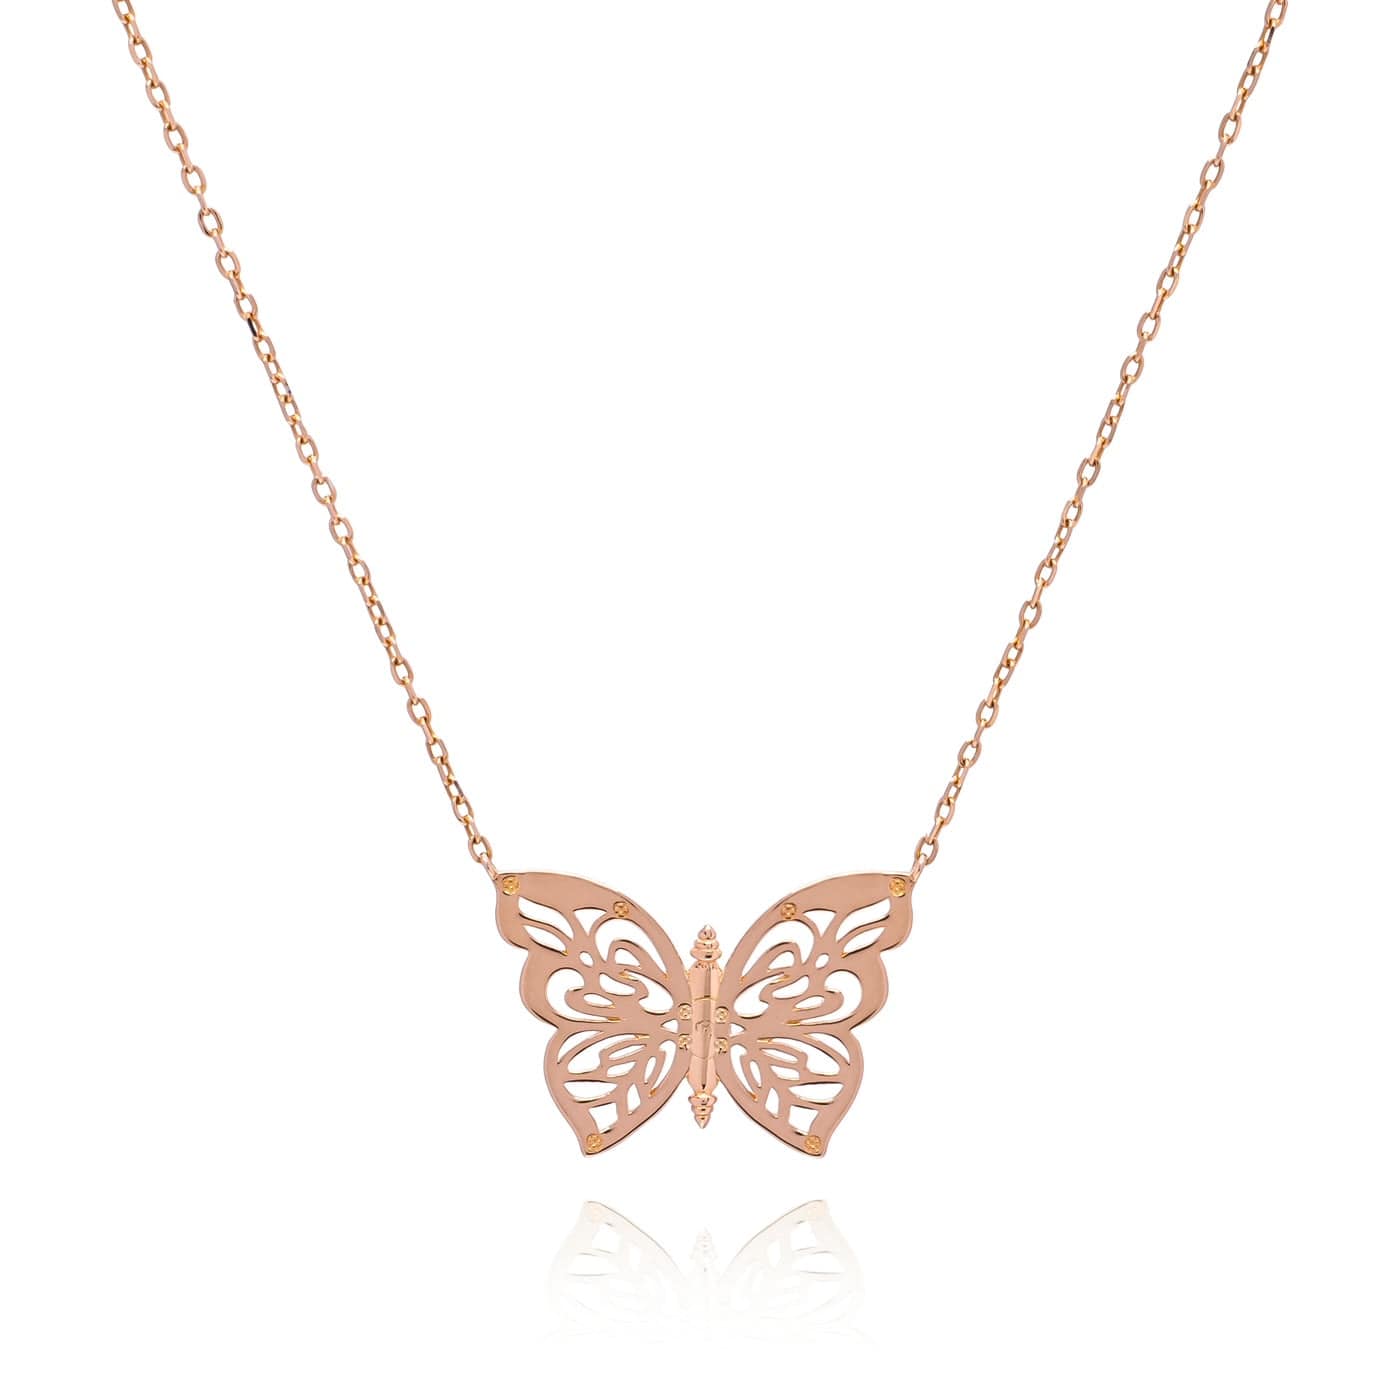 Papillon Jewelry – Dazzling Paws Jewelry